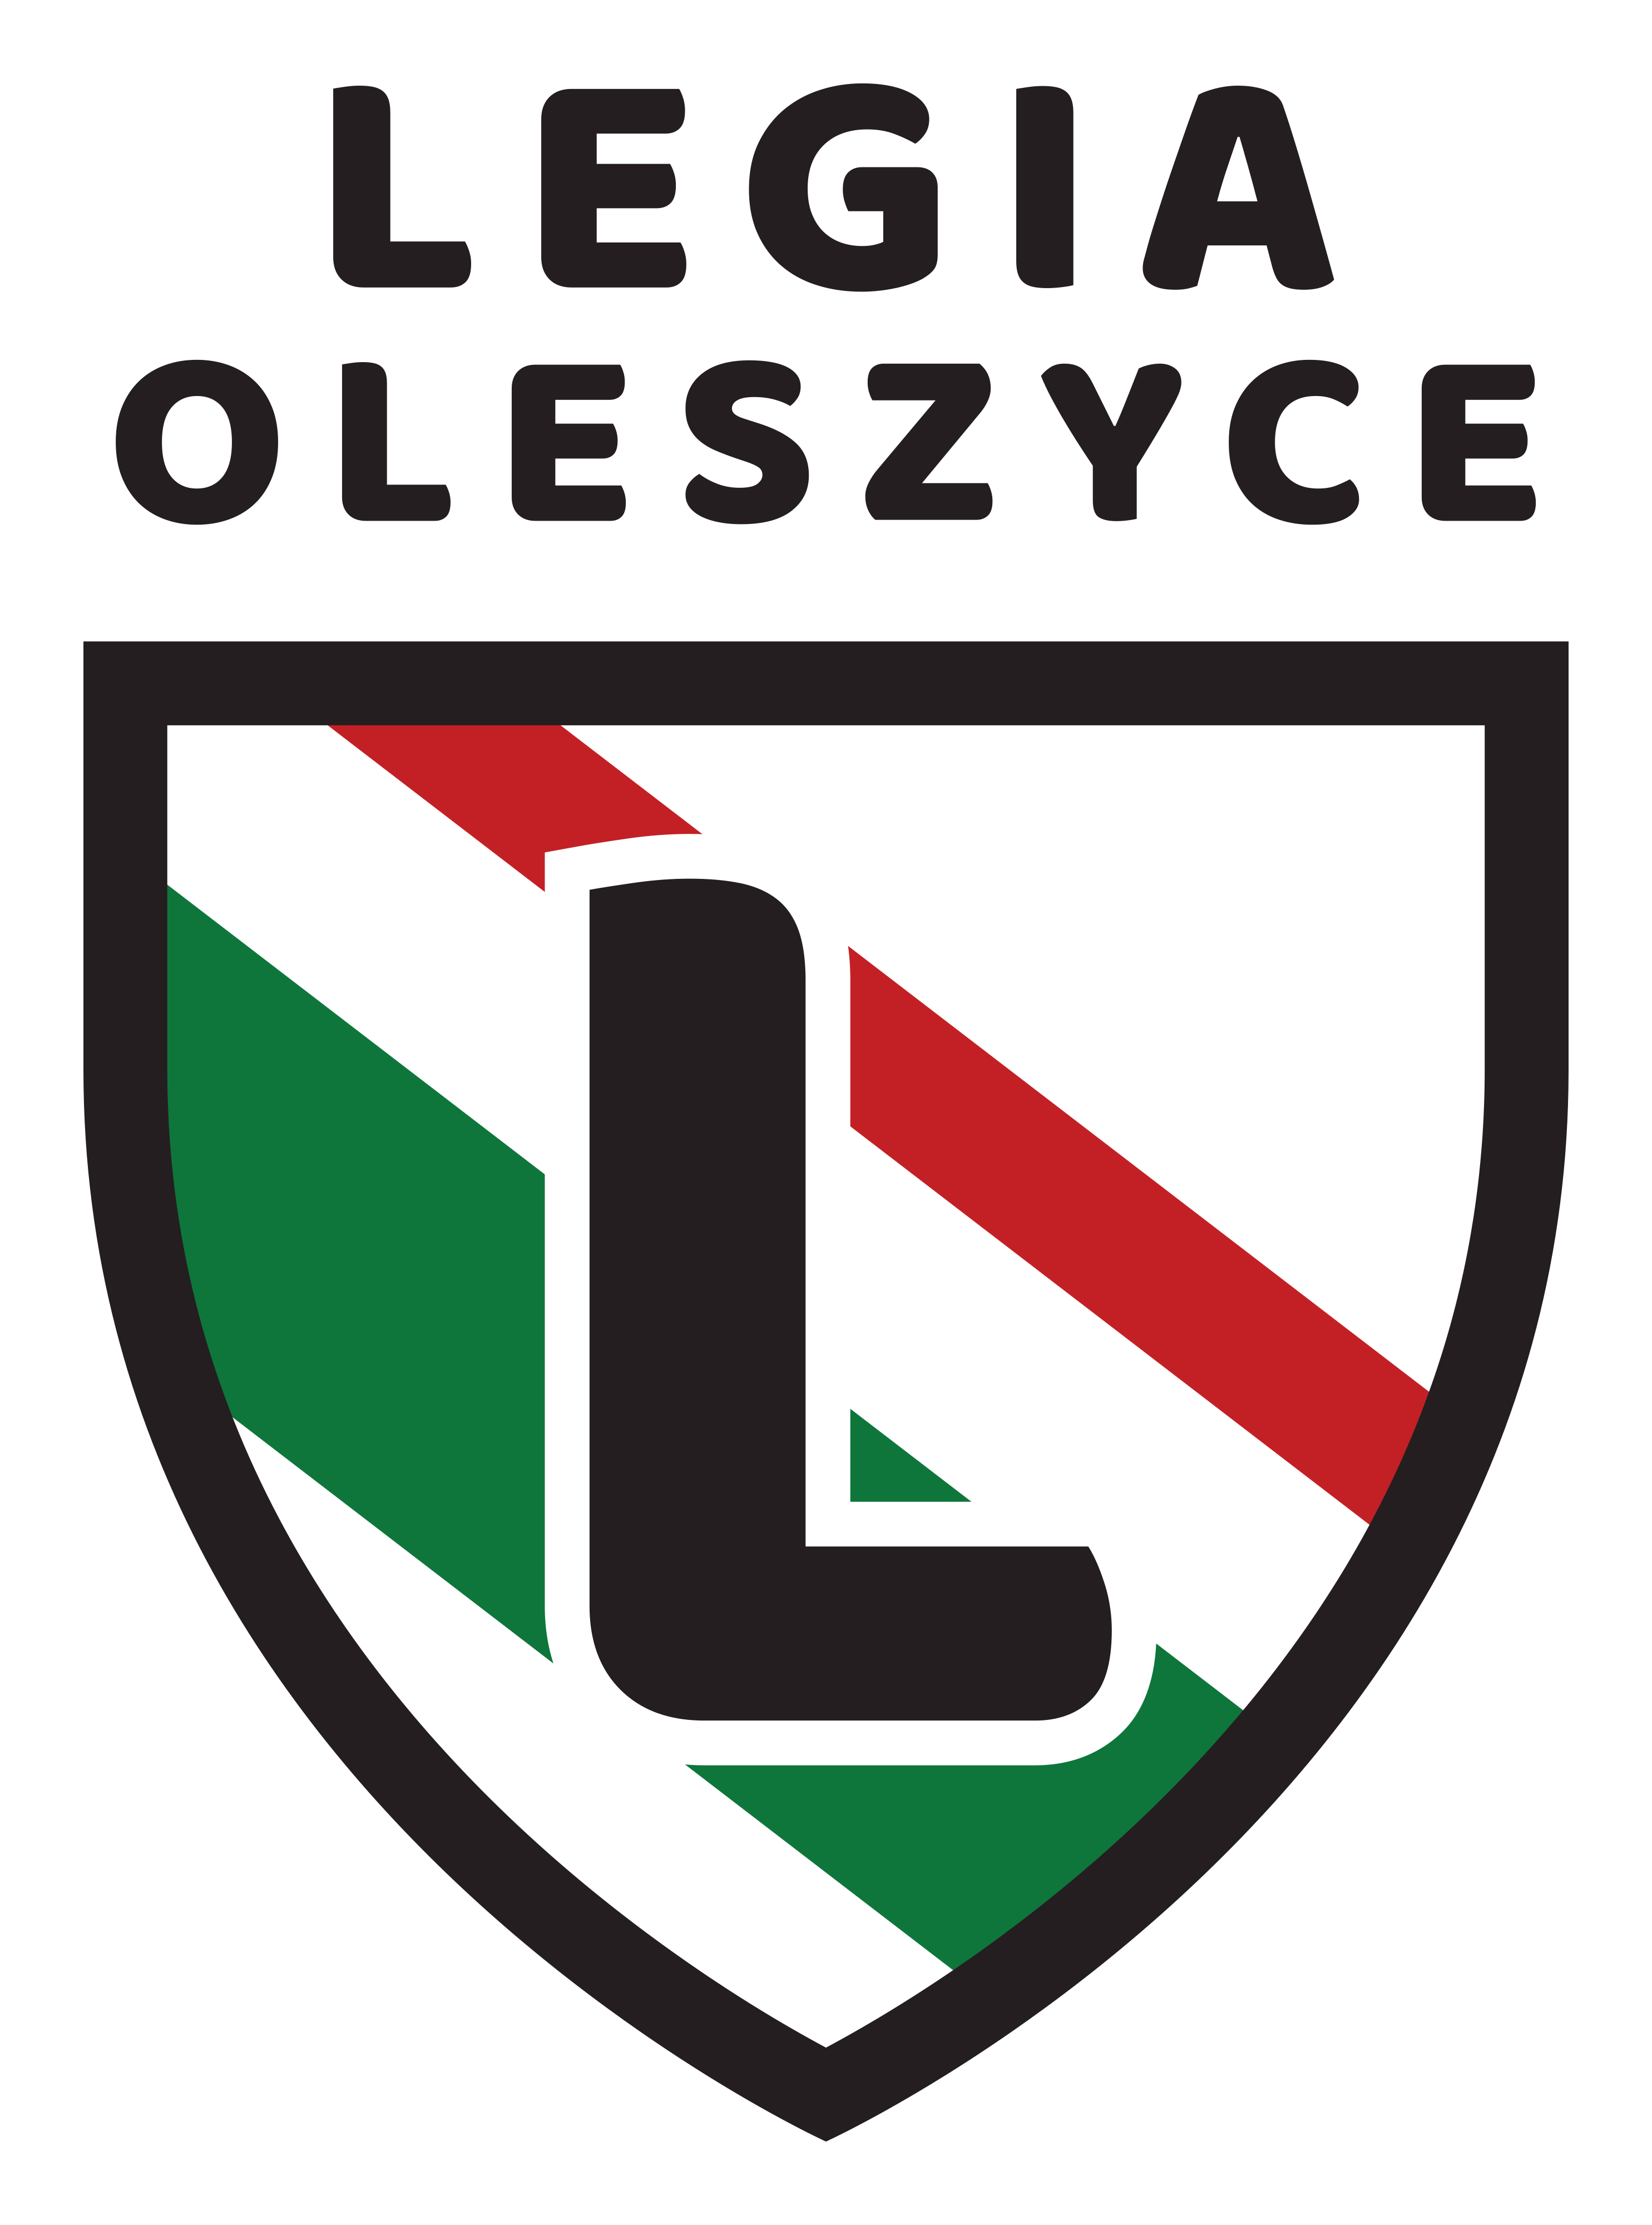 Oleszyce